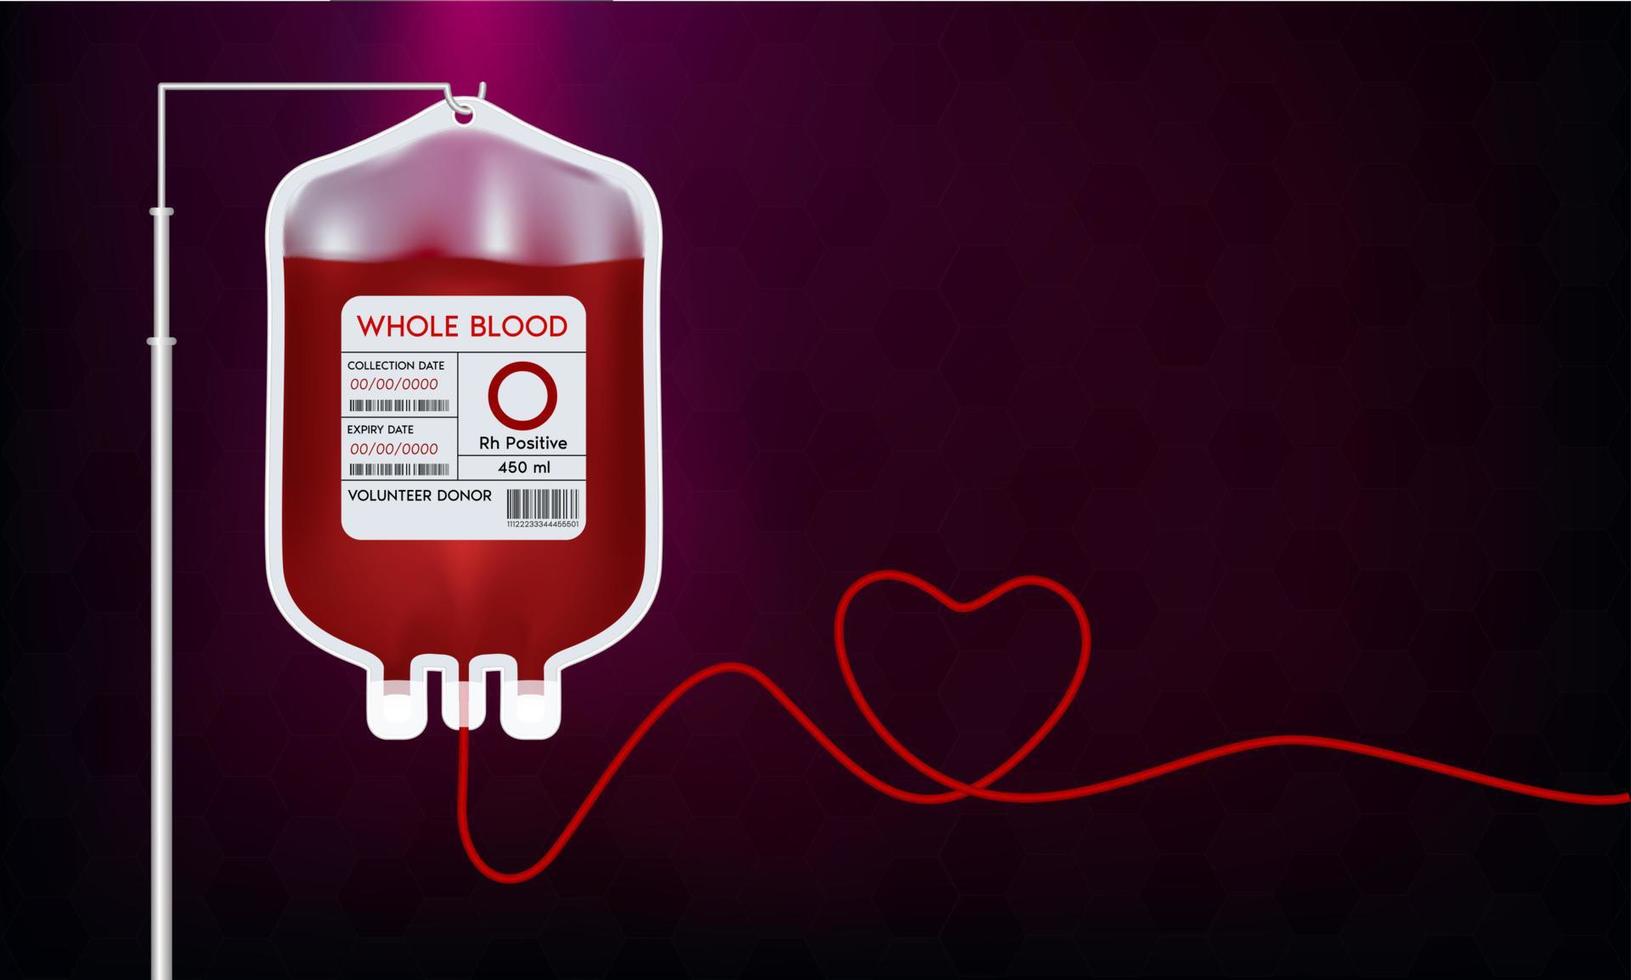 sacca sangue con etichetta diverso gruppo sanguigno o sistema. idee per la donazione di sangue per aiutare il medico ferito. illustrazione 3d vettoriale eps10